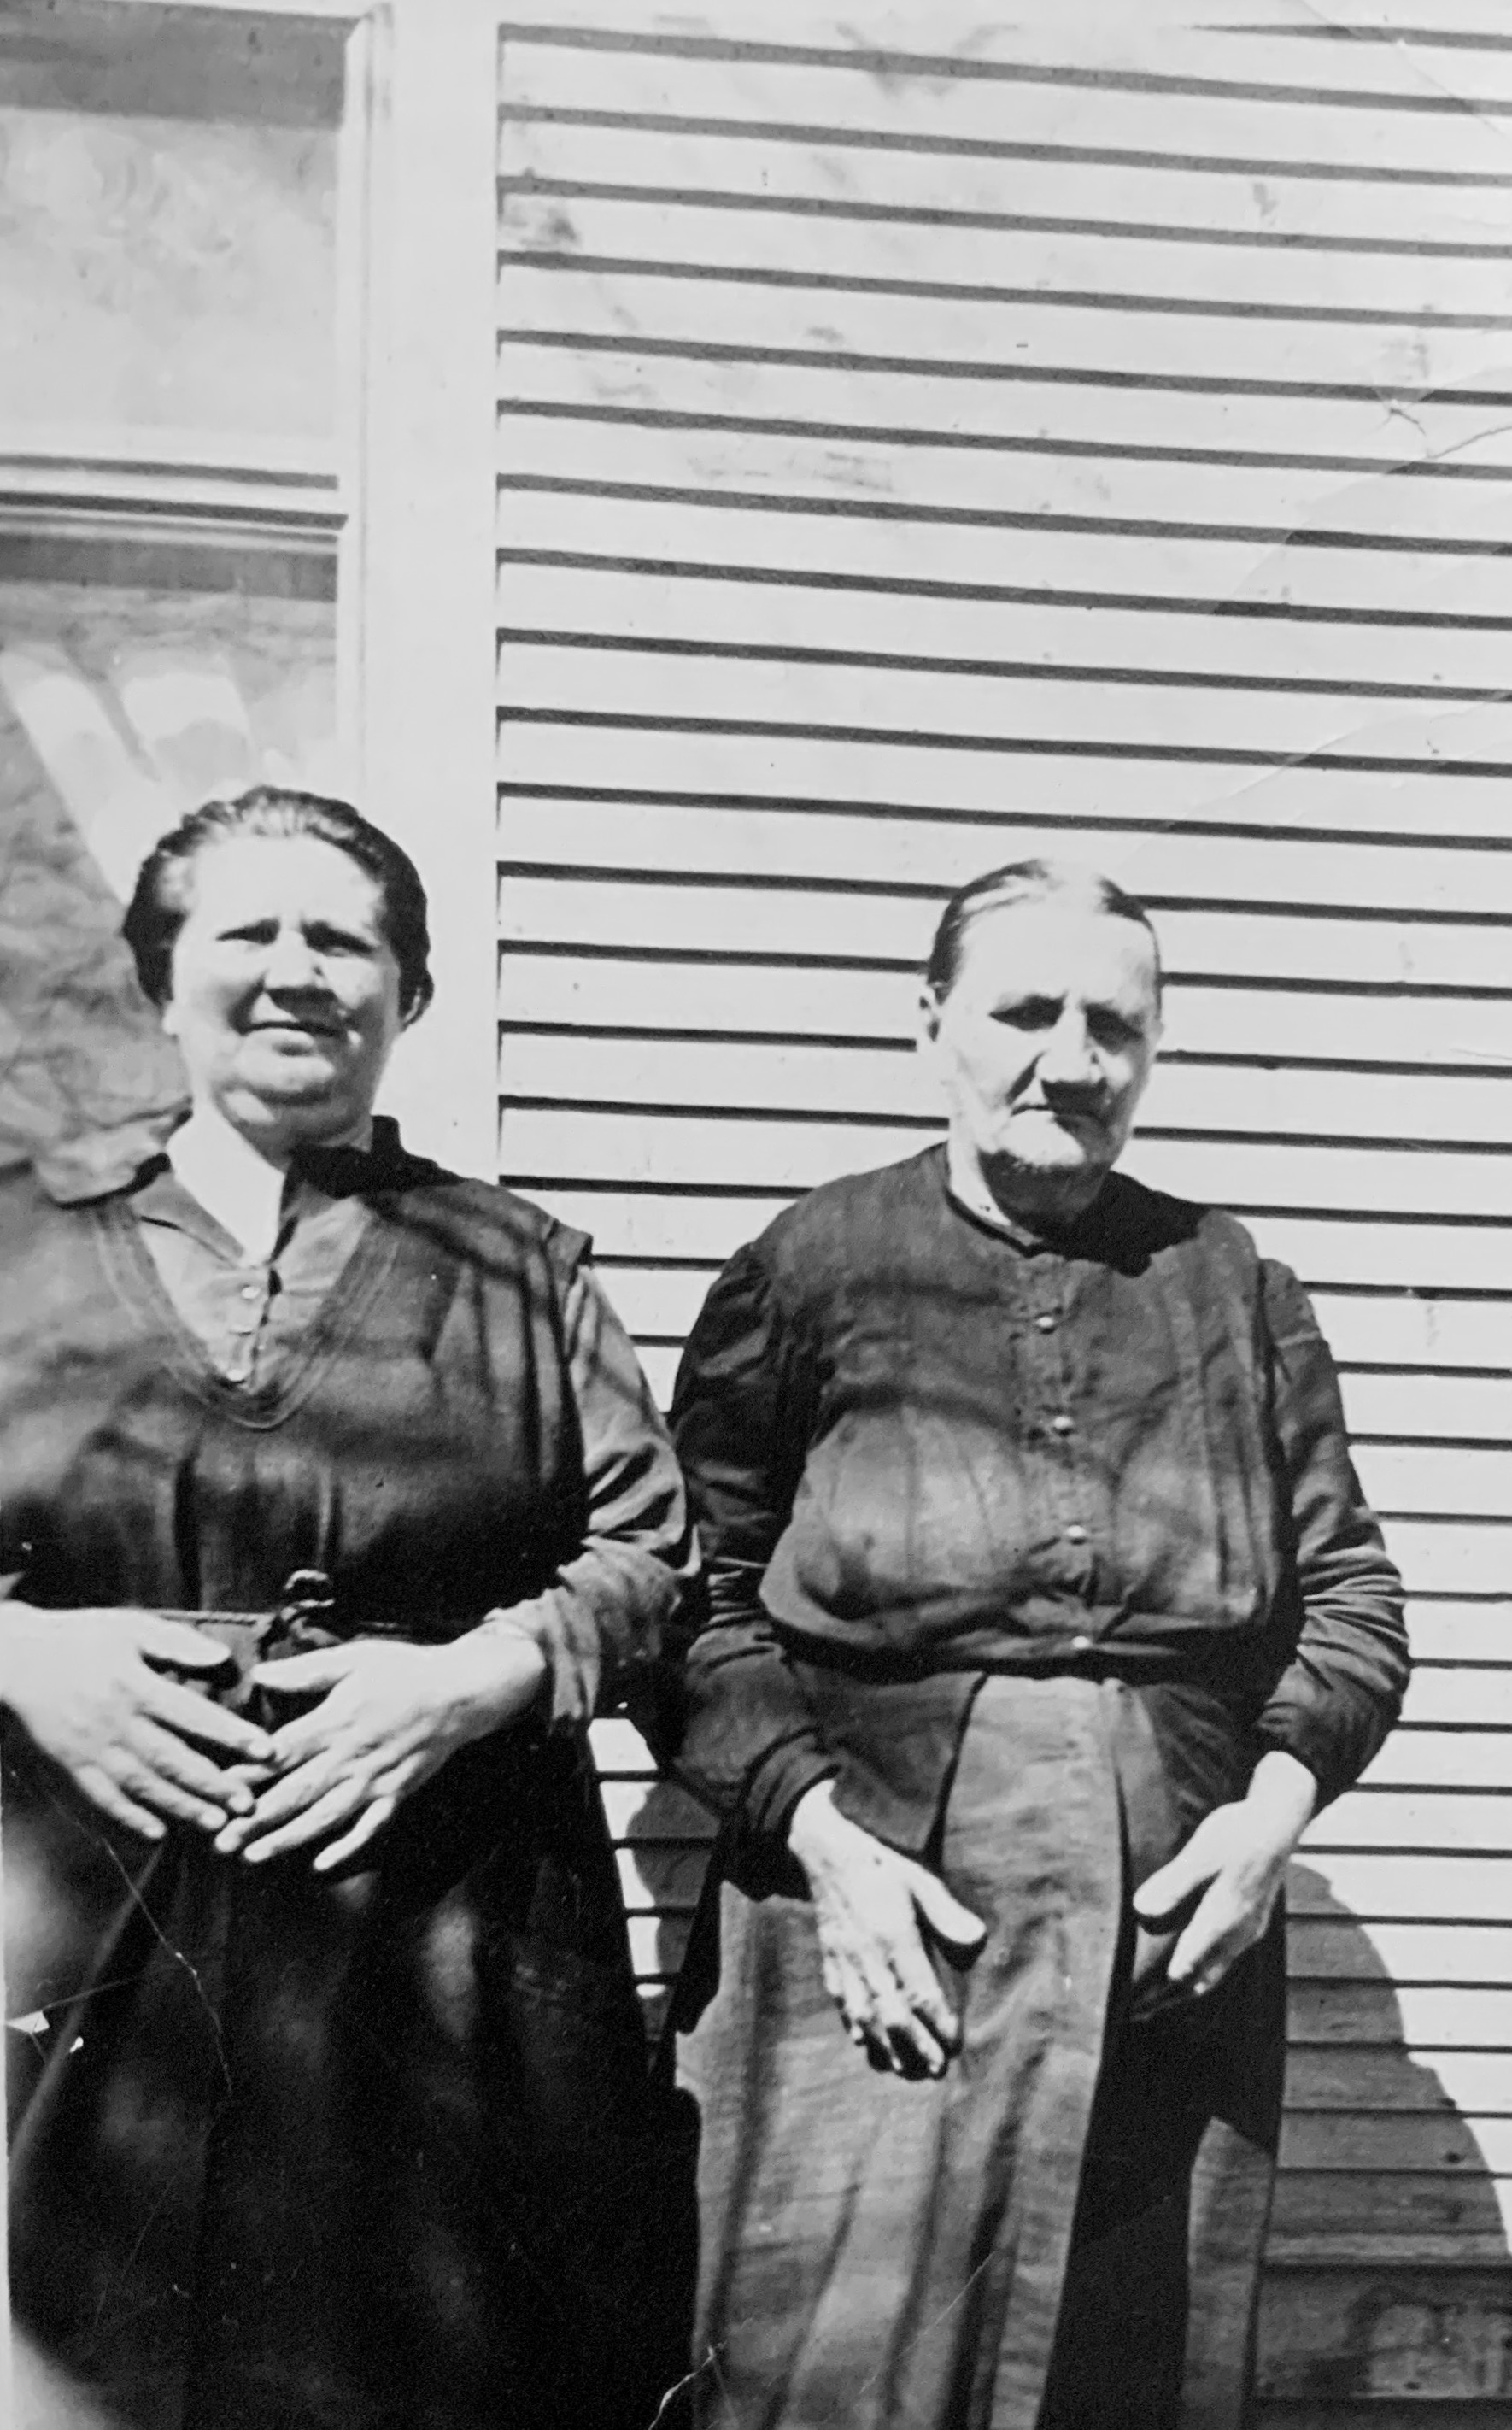 Great grandma Korbe and great, great grandma Brown, 1916